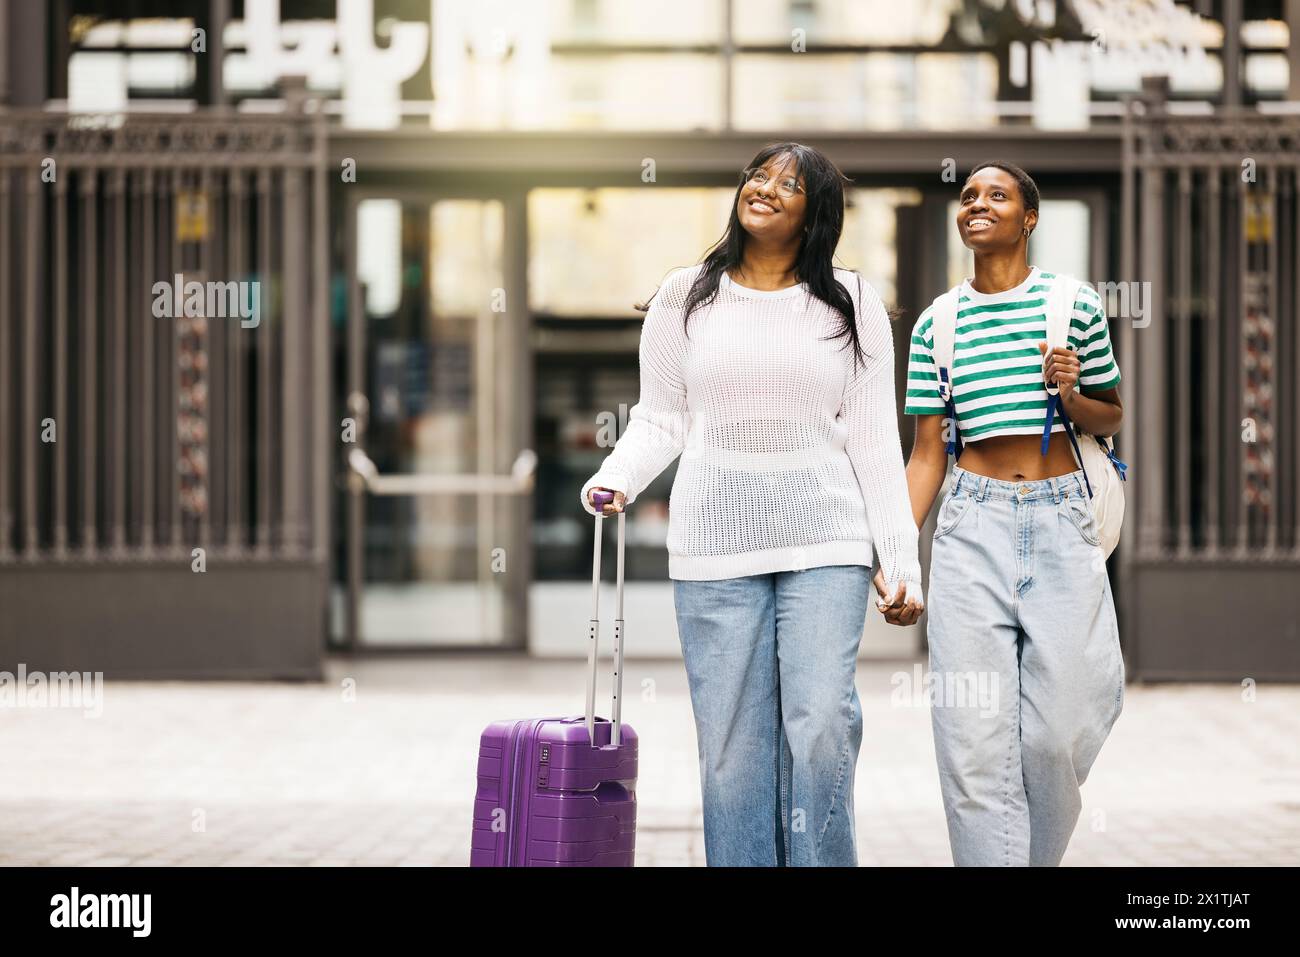 Deux jeunes femmes joyeuses tirant une valise et marchant ensemble à travers une ville pendant un week-end. Banque D'Images